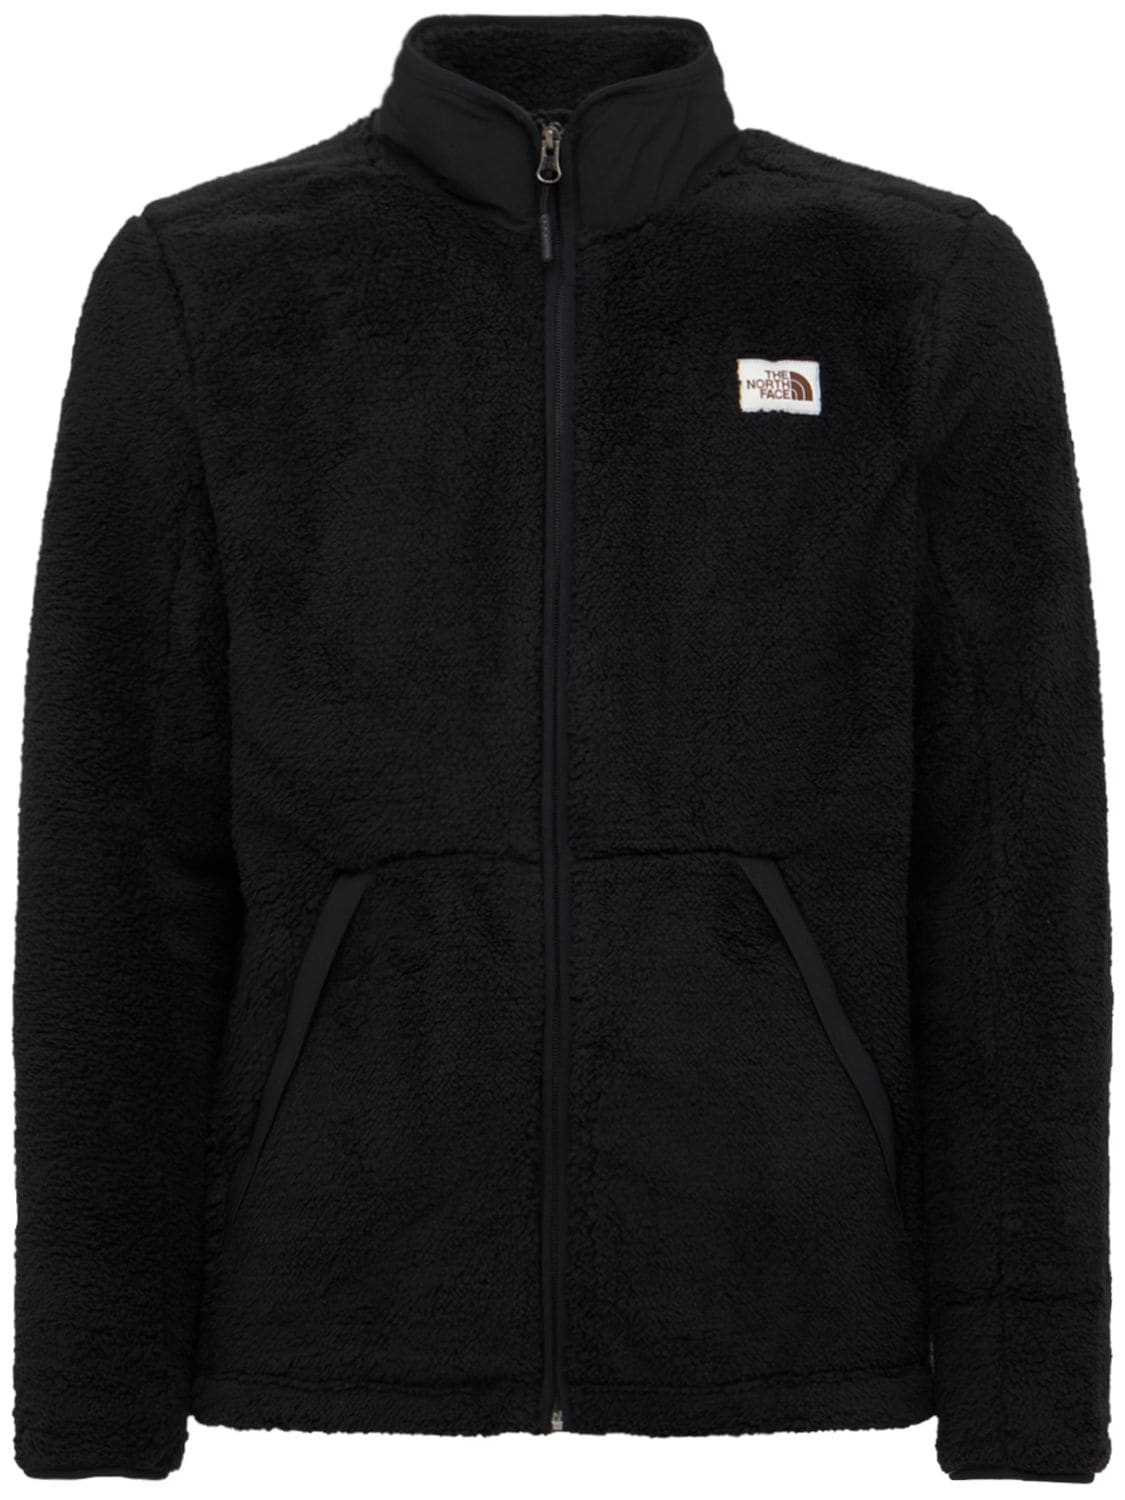 Campshire Full Zip Fleece Jacket